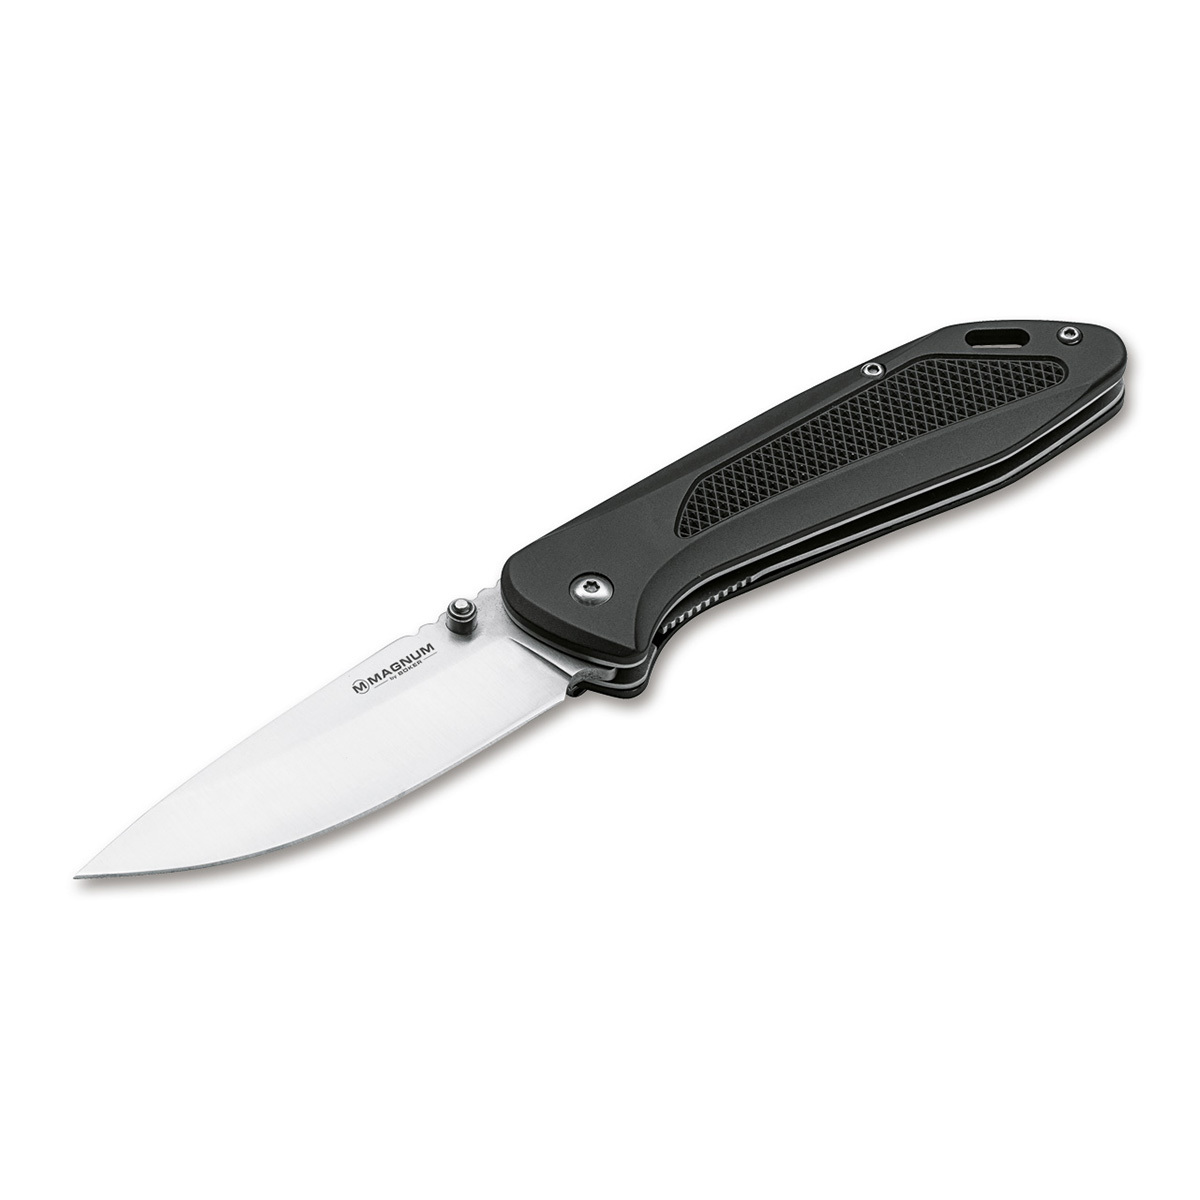 Нож складной Boker Advance black, сталь 440C, рукоять алюминий нож сокол мастерская семина сталь х12мф рукоять карельская береза граб